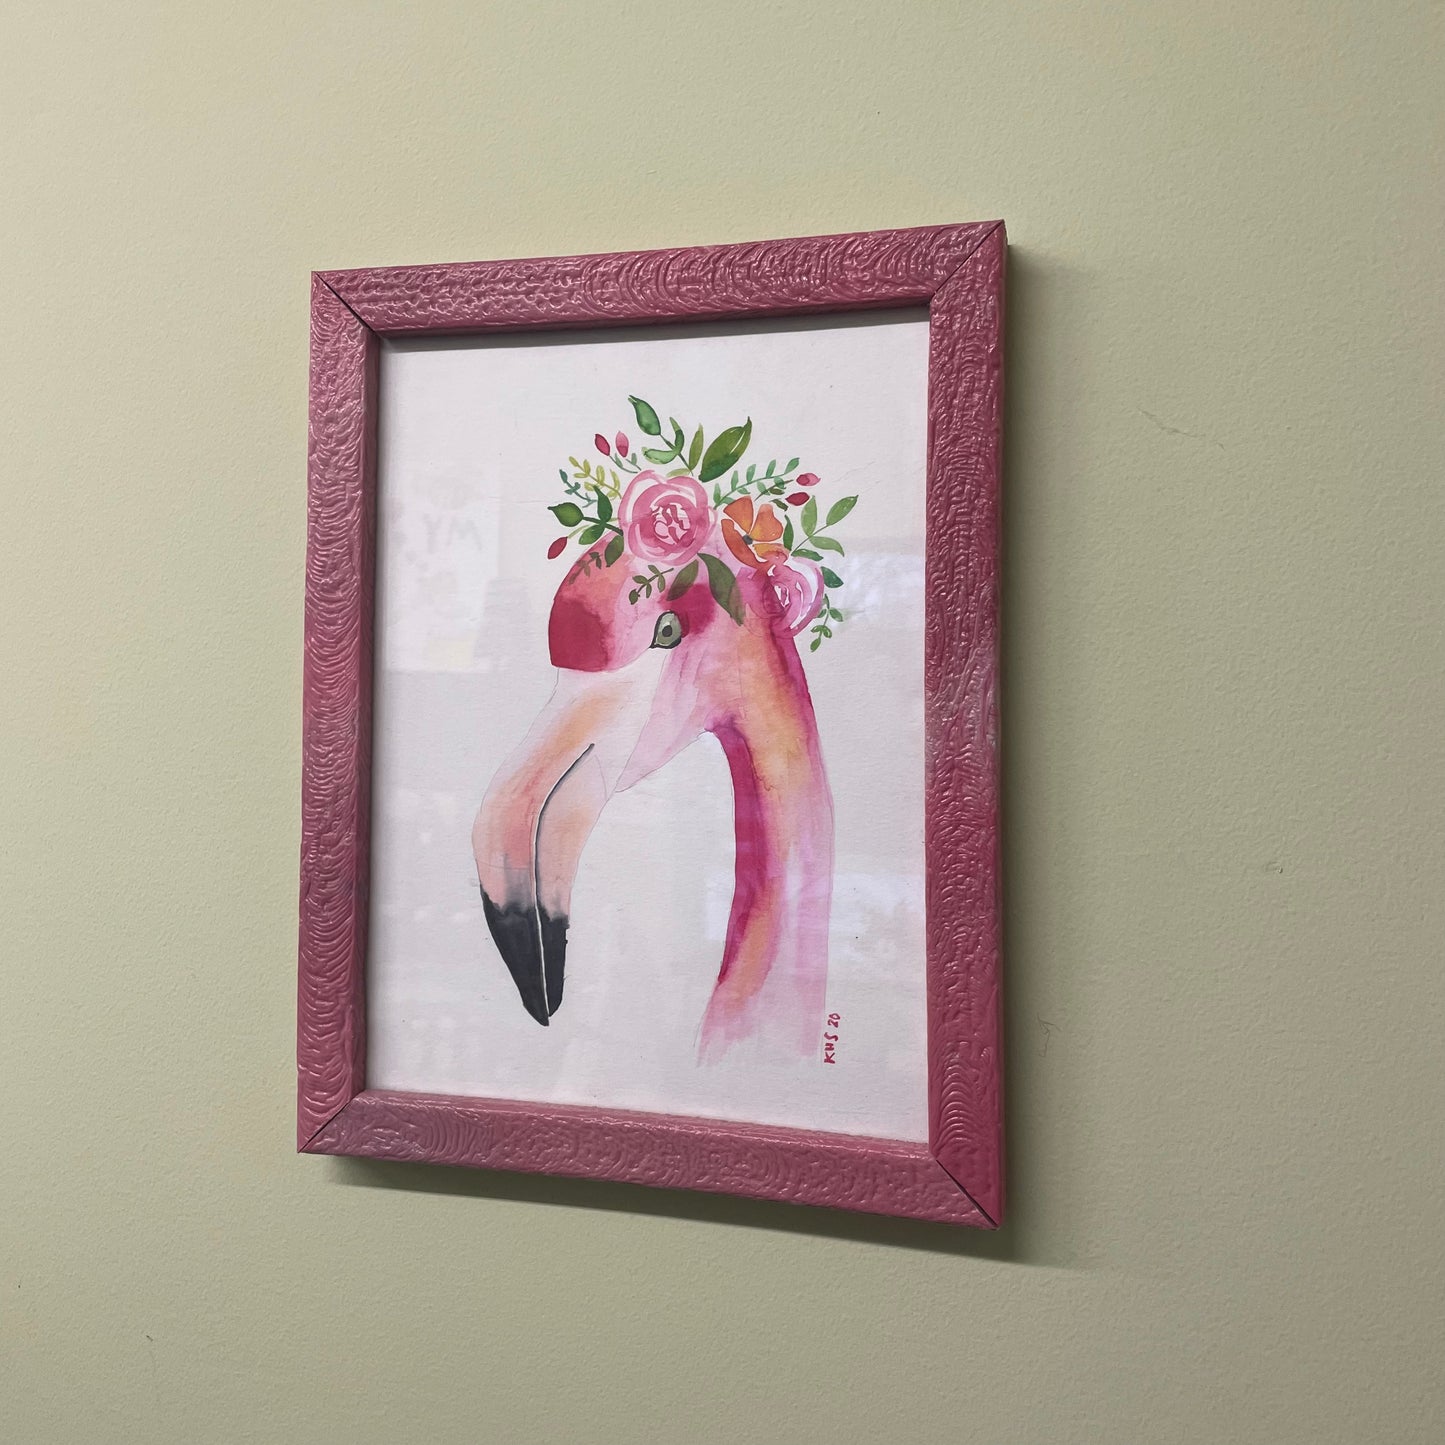 A Pink Flamingo Portrait